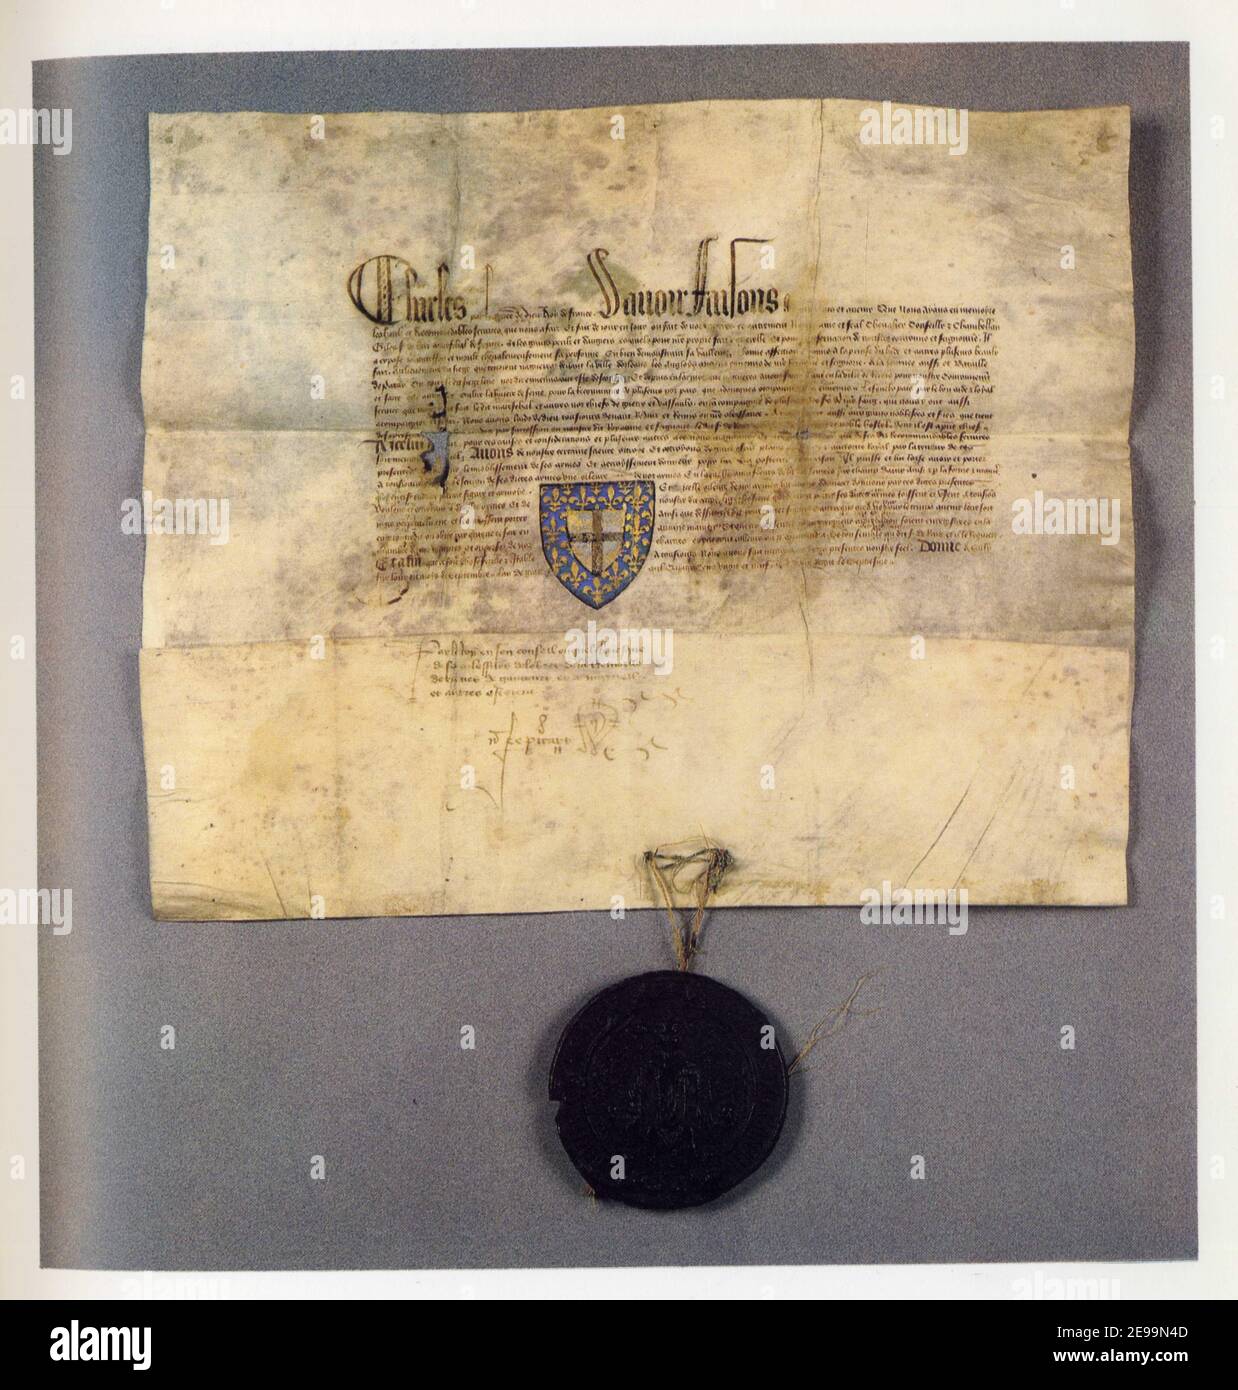 Diplôme de Charles VII en faveur de Gilles de Rais, Sully-sur-Loire. Septembre 1429. Parchemin, sceau de majesté de Charles VII sur lacs de soie rouge Stock Photo